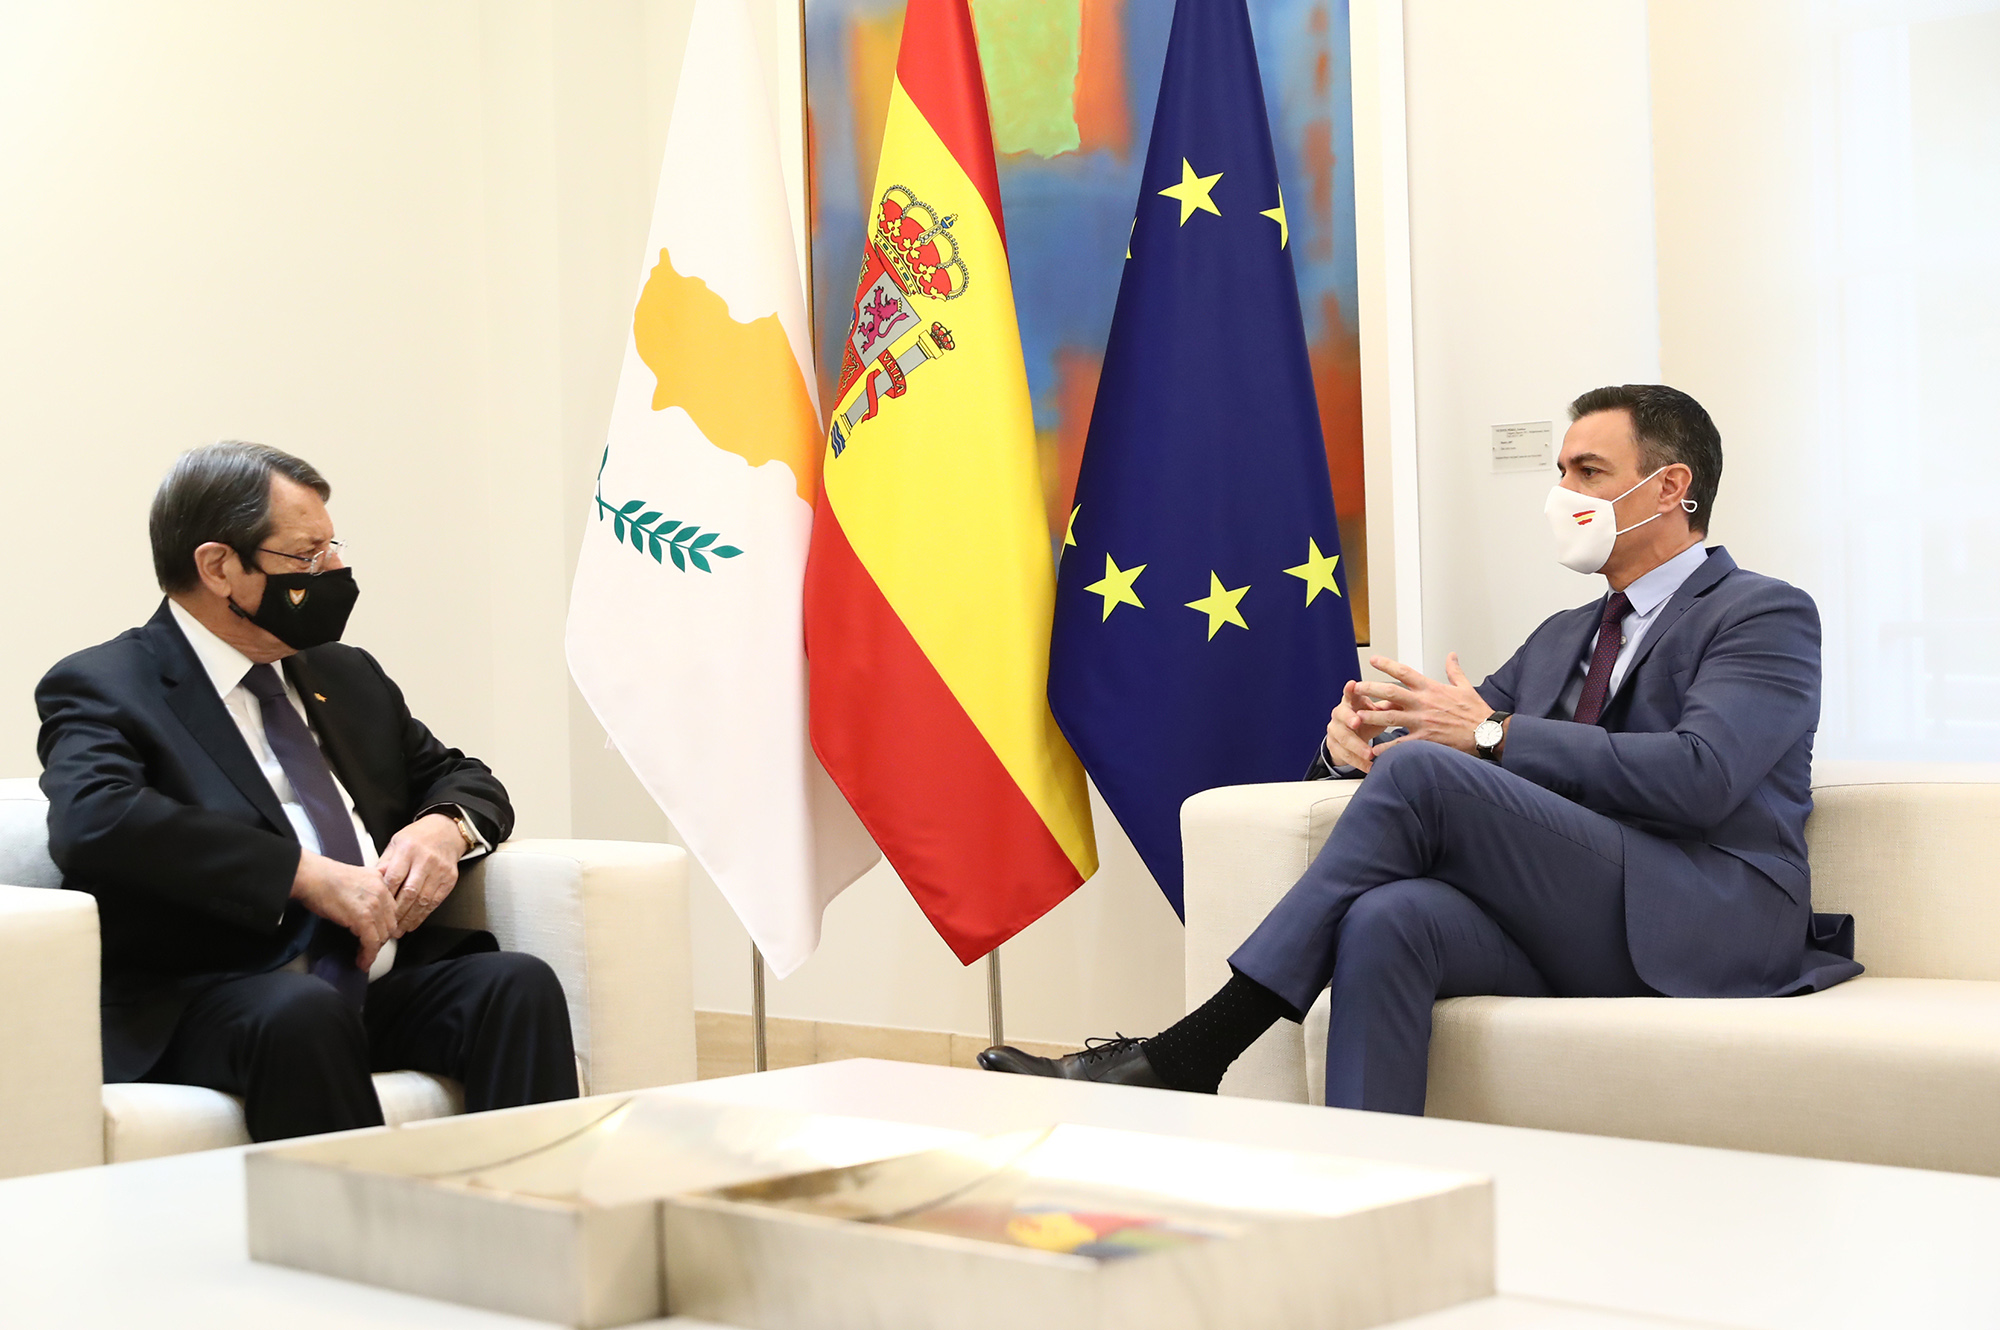 El presidente del Gobierno, Pedro Sánchez, y el presidente de la República de Chipre, Nicos Anastasiades, durante su encuentro